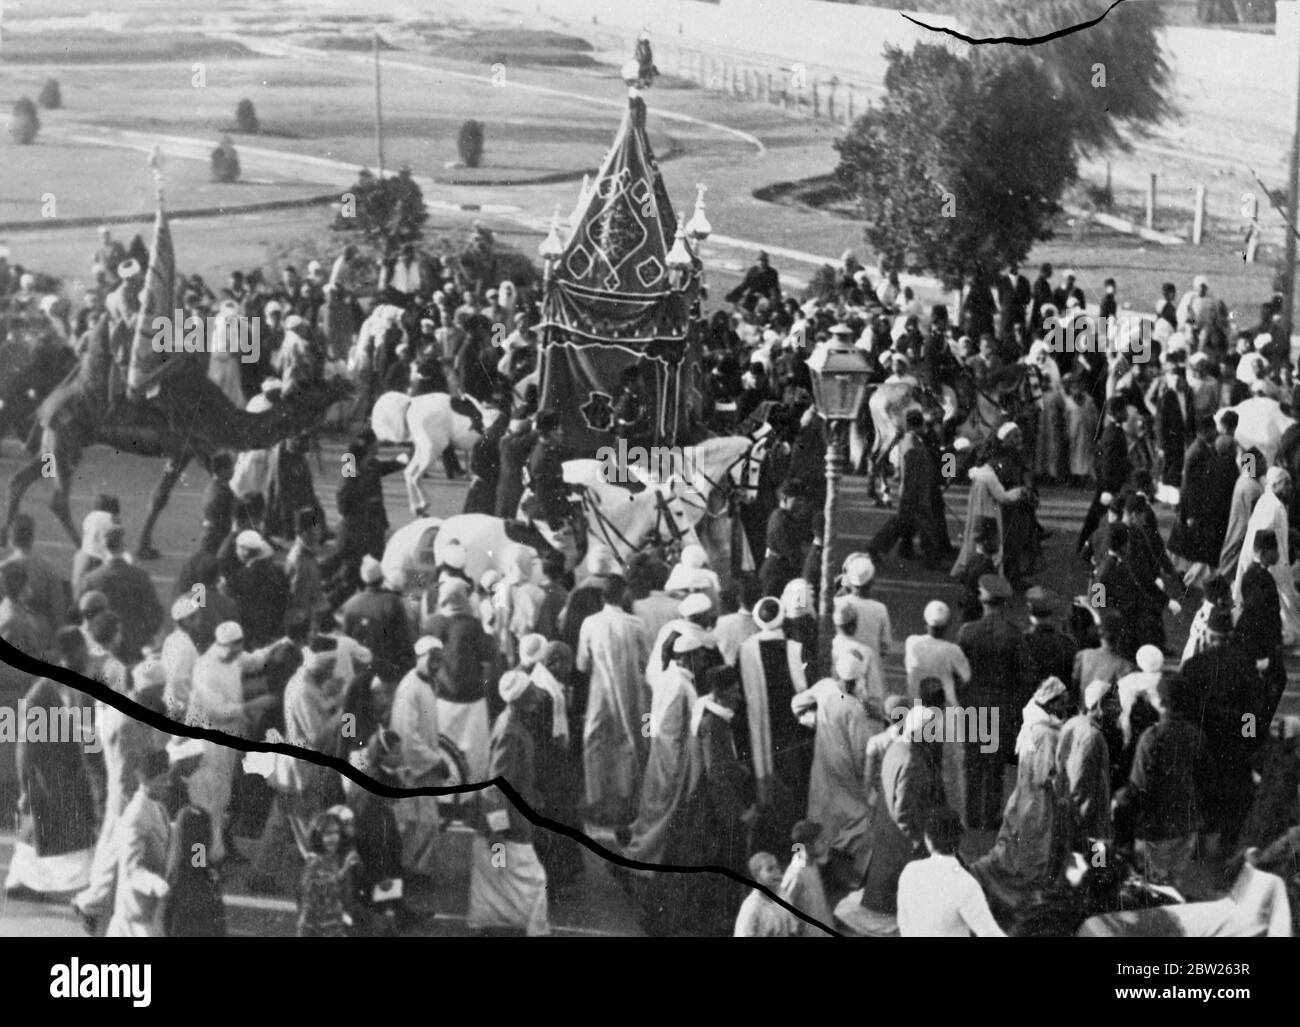 Der Heilige Teppich beginnt mit der Pilgerfahrt von Kairo nach Mekka. Mit einer traditionellen Zeremonie verließen die geschmückte Howdah, die das ägyptische Königshaus symbolisiert, und der Heilige Teppich Kairo auf der jährlichen Pilgerreise nach Mekka. Der Teppich wird für das folgende Jahr zur Abdeckung der Kaaba in Mekka verwendet. Foto zeigt, die Szene am Beginn der Pilgerfahrt. Stockfoto